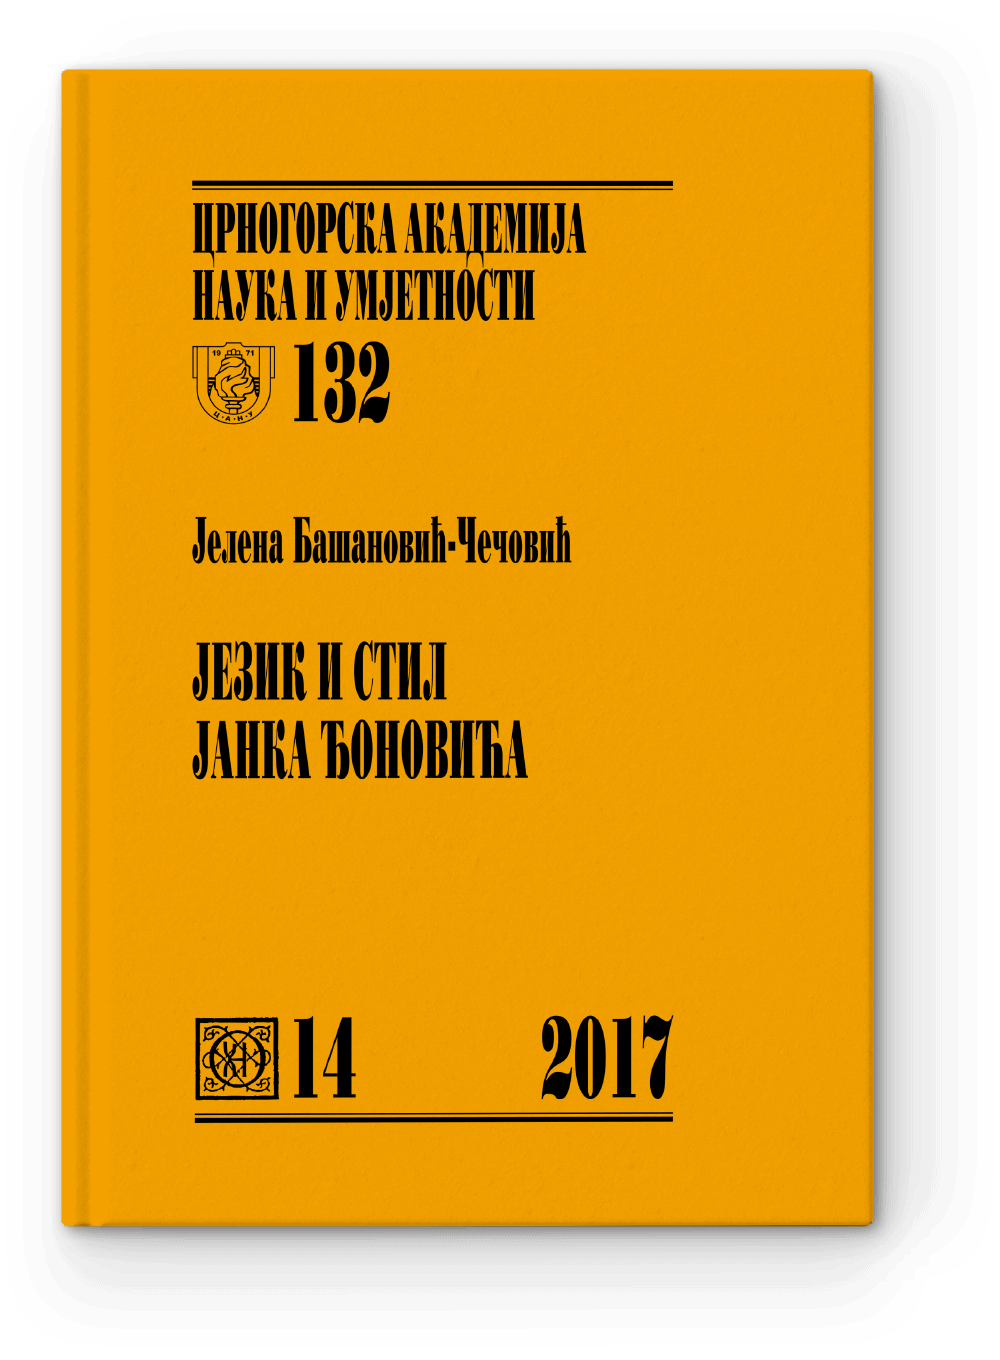 443-JBCH-Djonovic